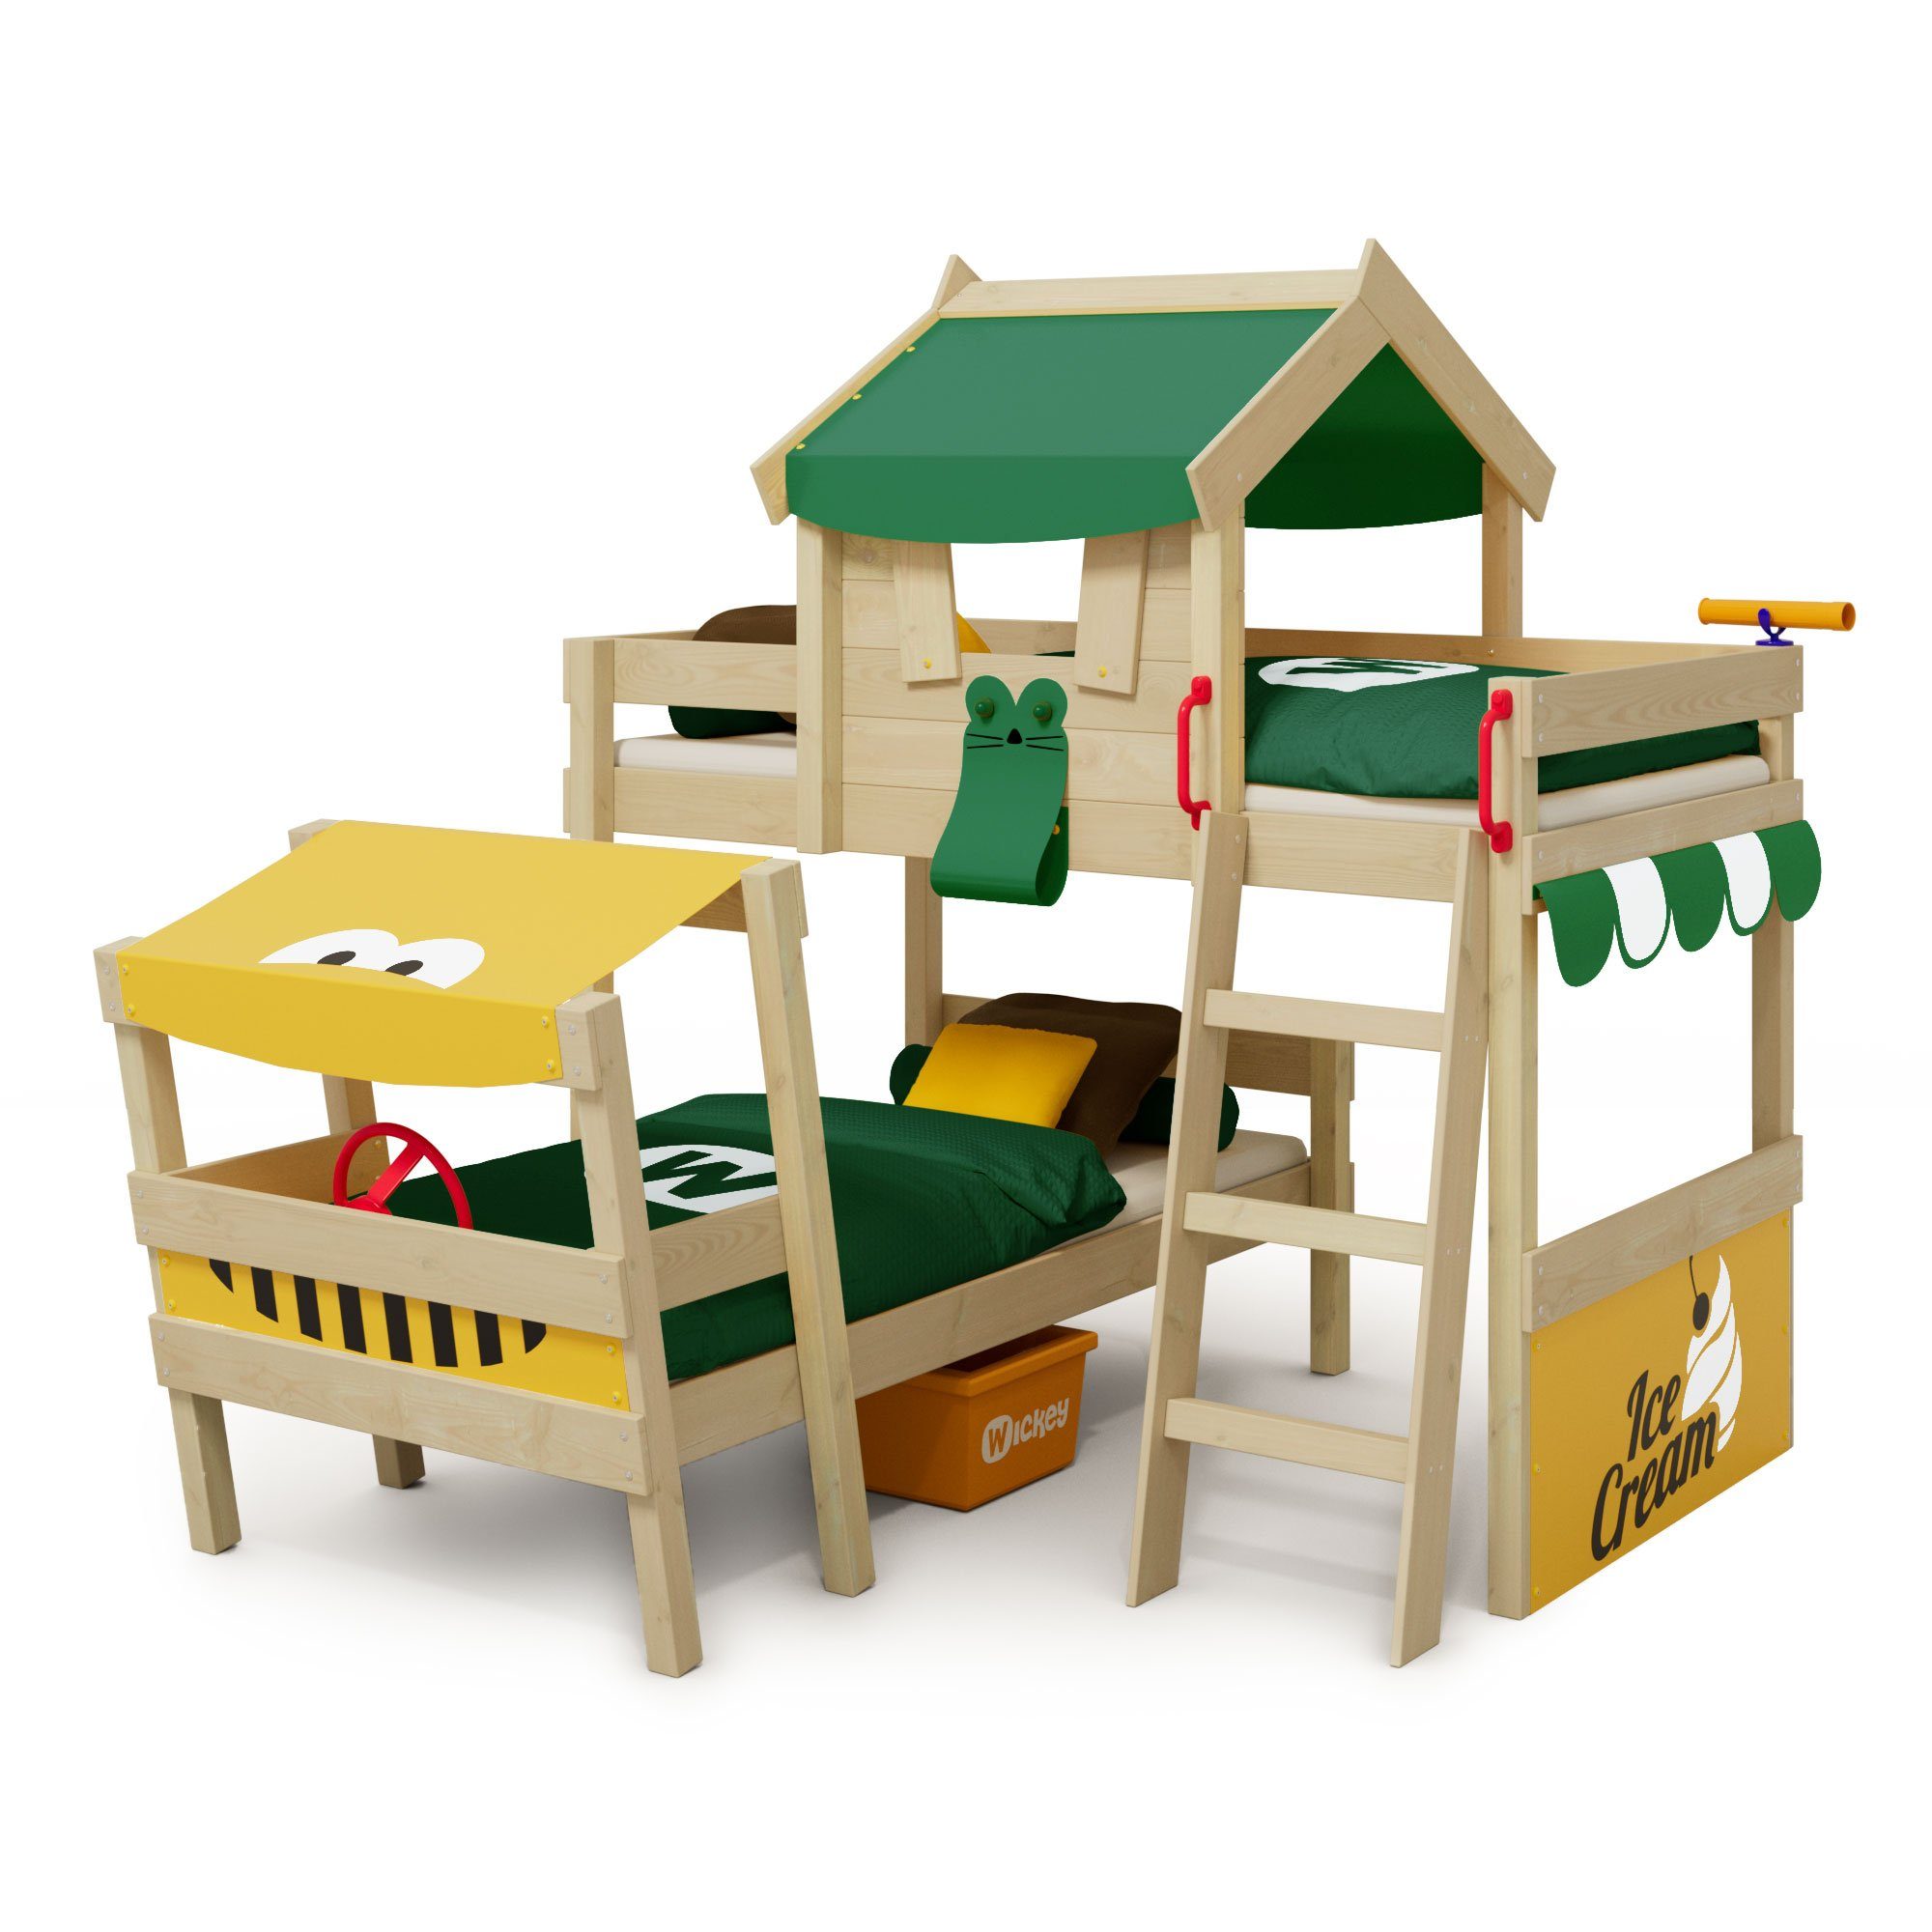 Wickey Kinderbett Crazy Trunky - Spielbett, 90 x 200 cm Hochbett (Holzpaket aus Pfosten und Brettern, Spielbett für Kinder), Massivholzbrett grün/gelb